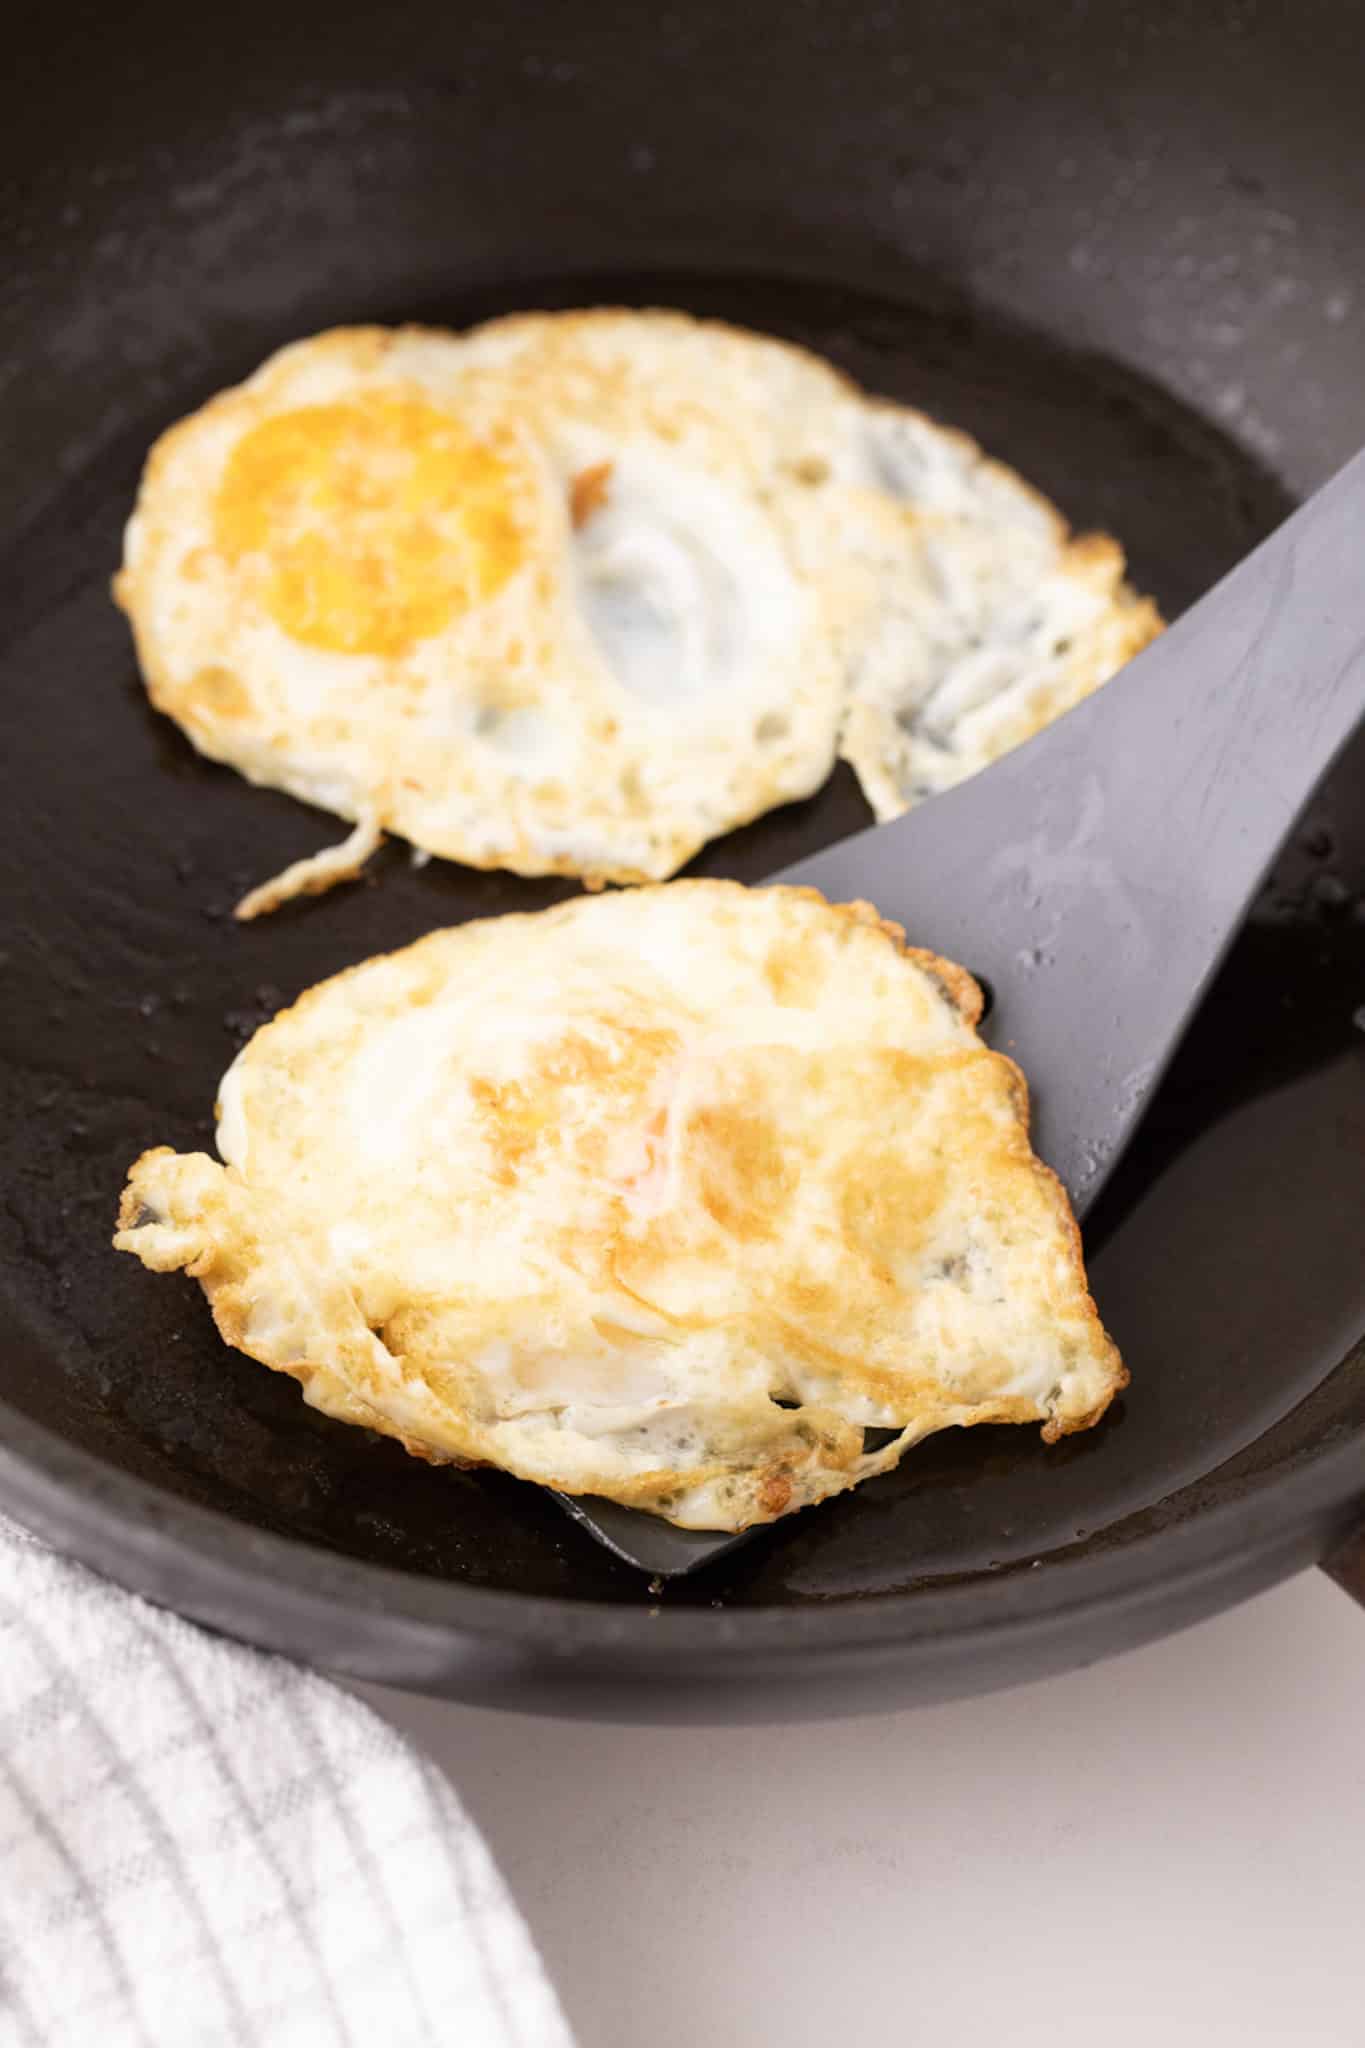 fried egg over medium